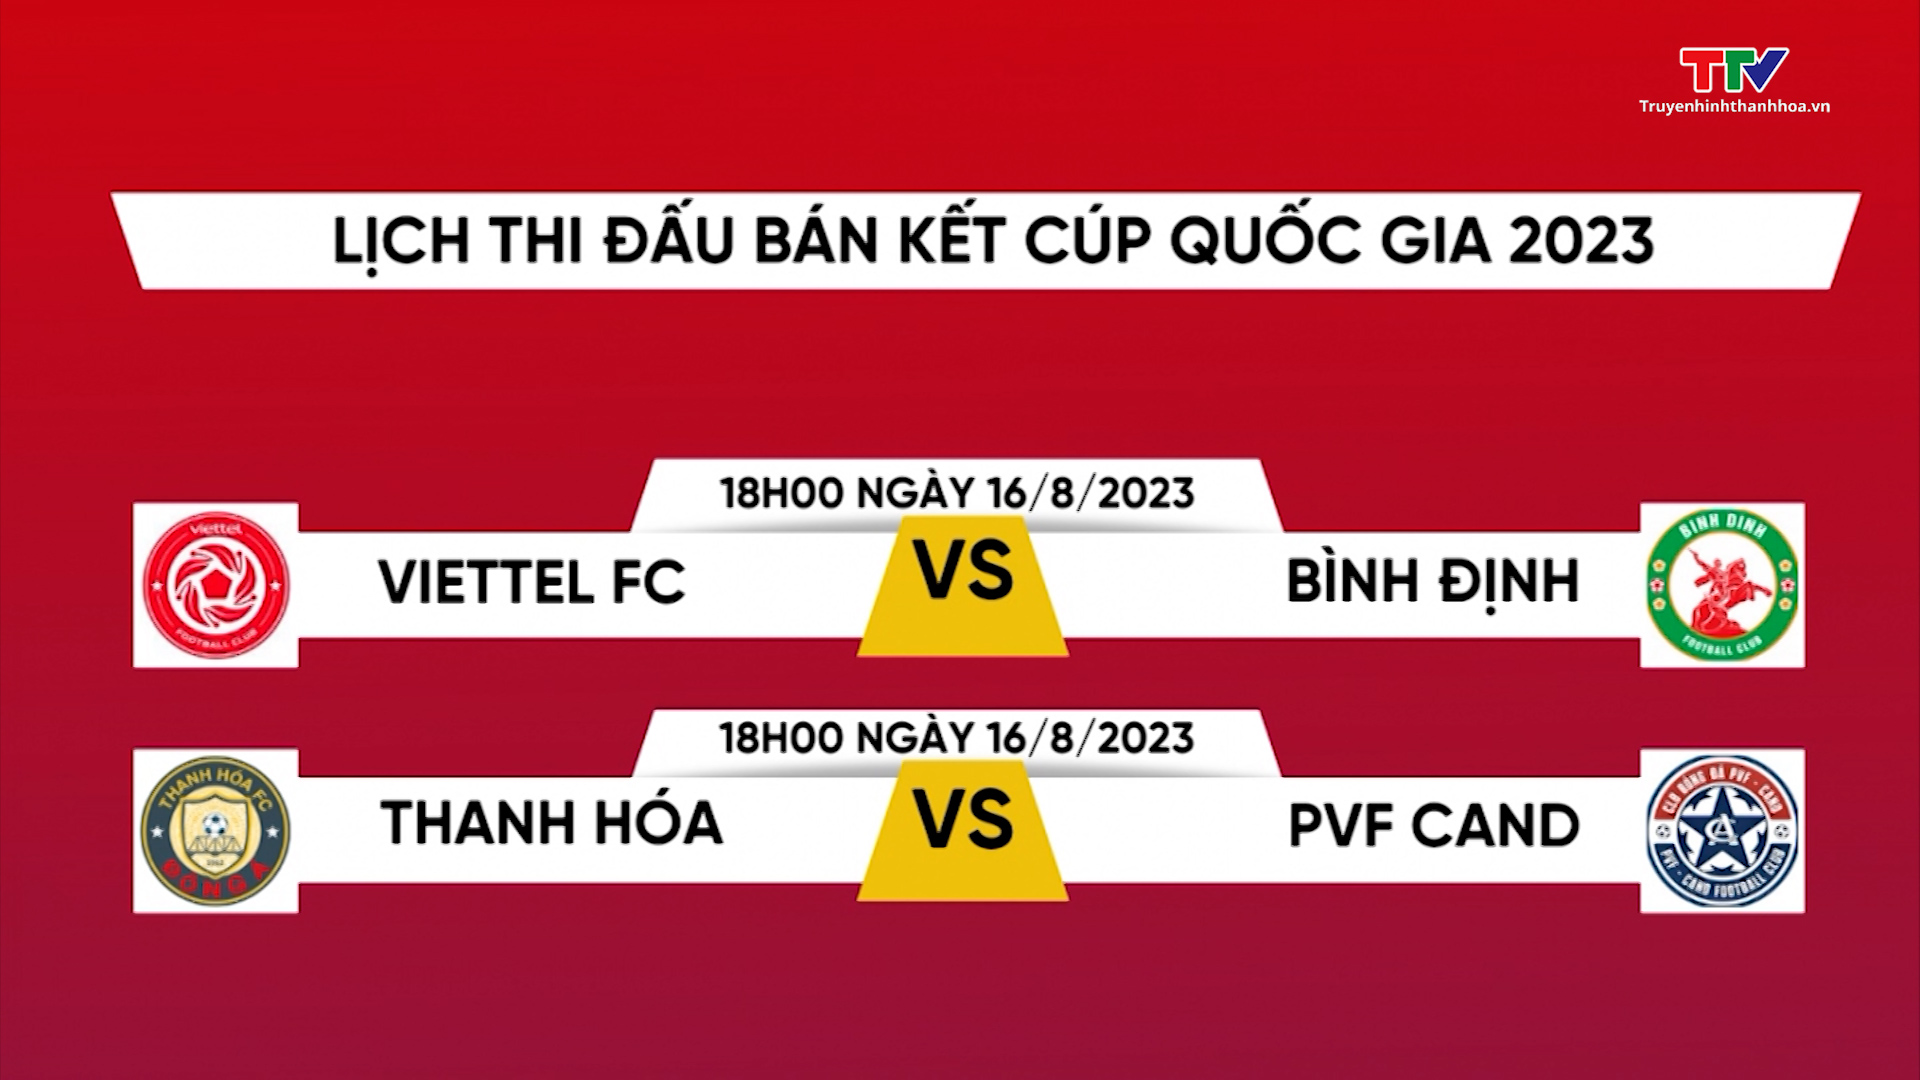 Thua đương kim vô địch Hà Nội, cơ hội đăng quang V.League 2023 chính thức khép lại với Câu lạc bộ Đông Á Thanh Hóa - Ảnh 4.